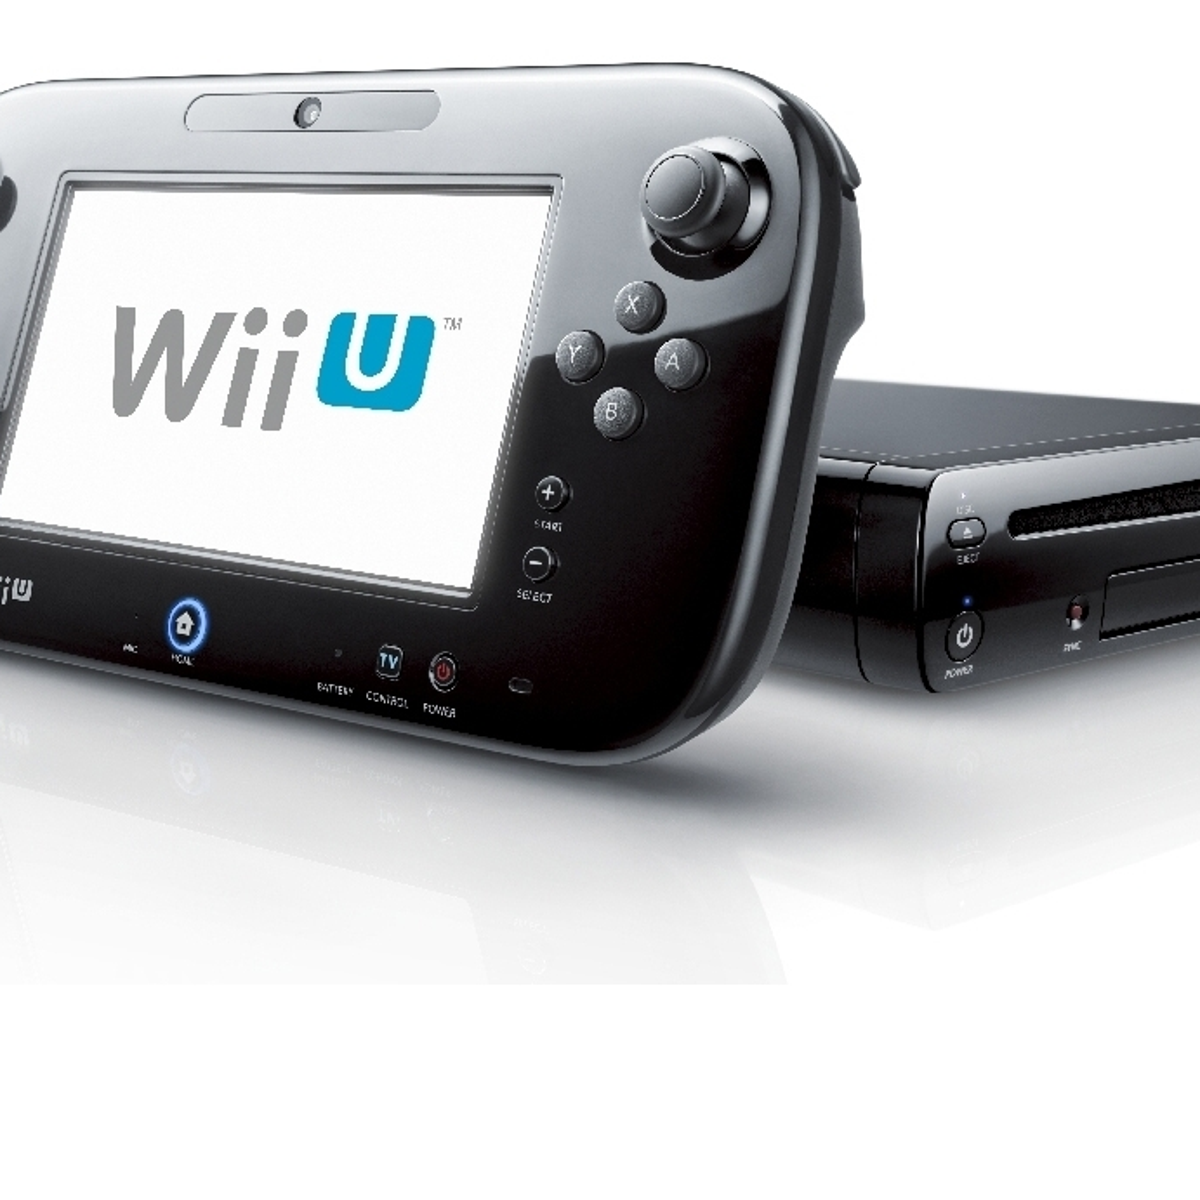 Melodieus Extra zijde Secrets of the Wii U GamePad | Eurogamer.net